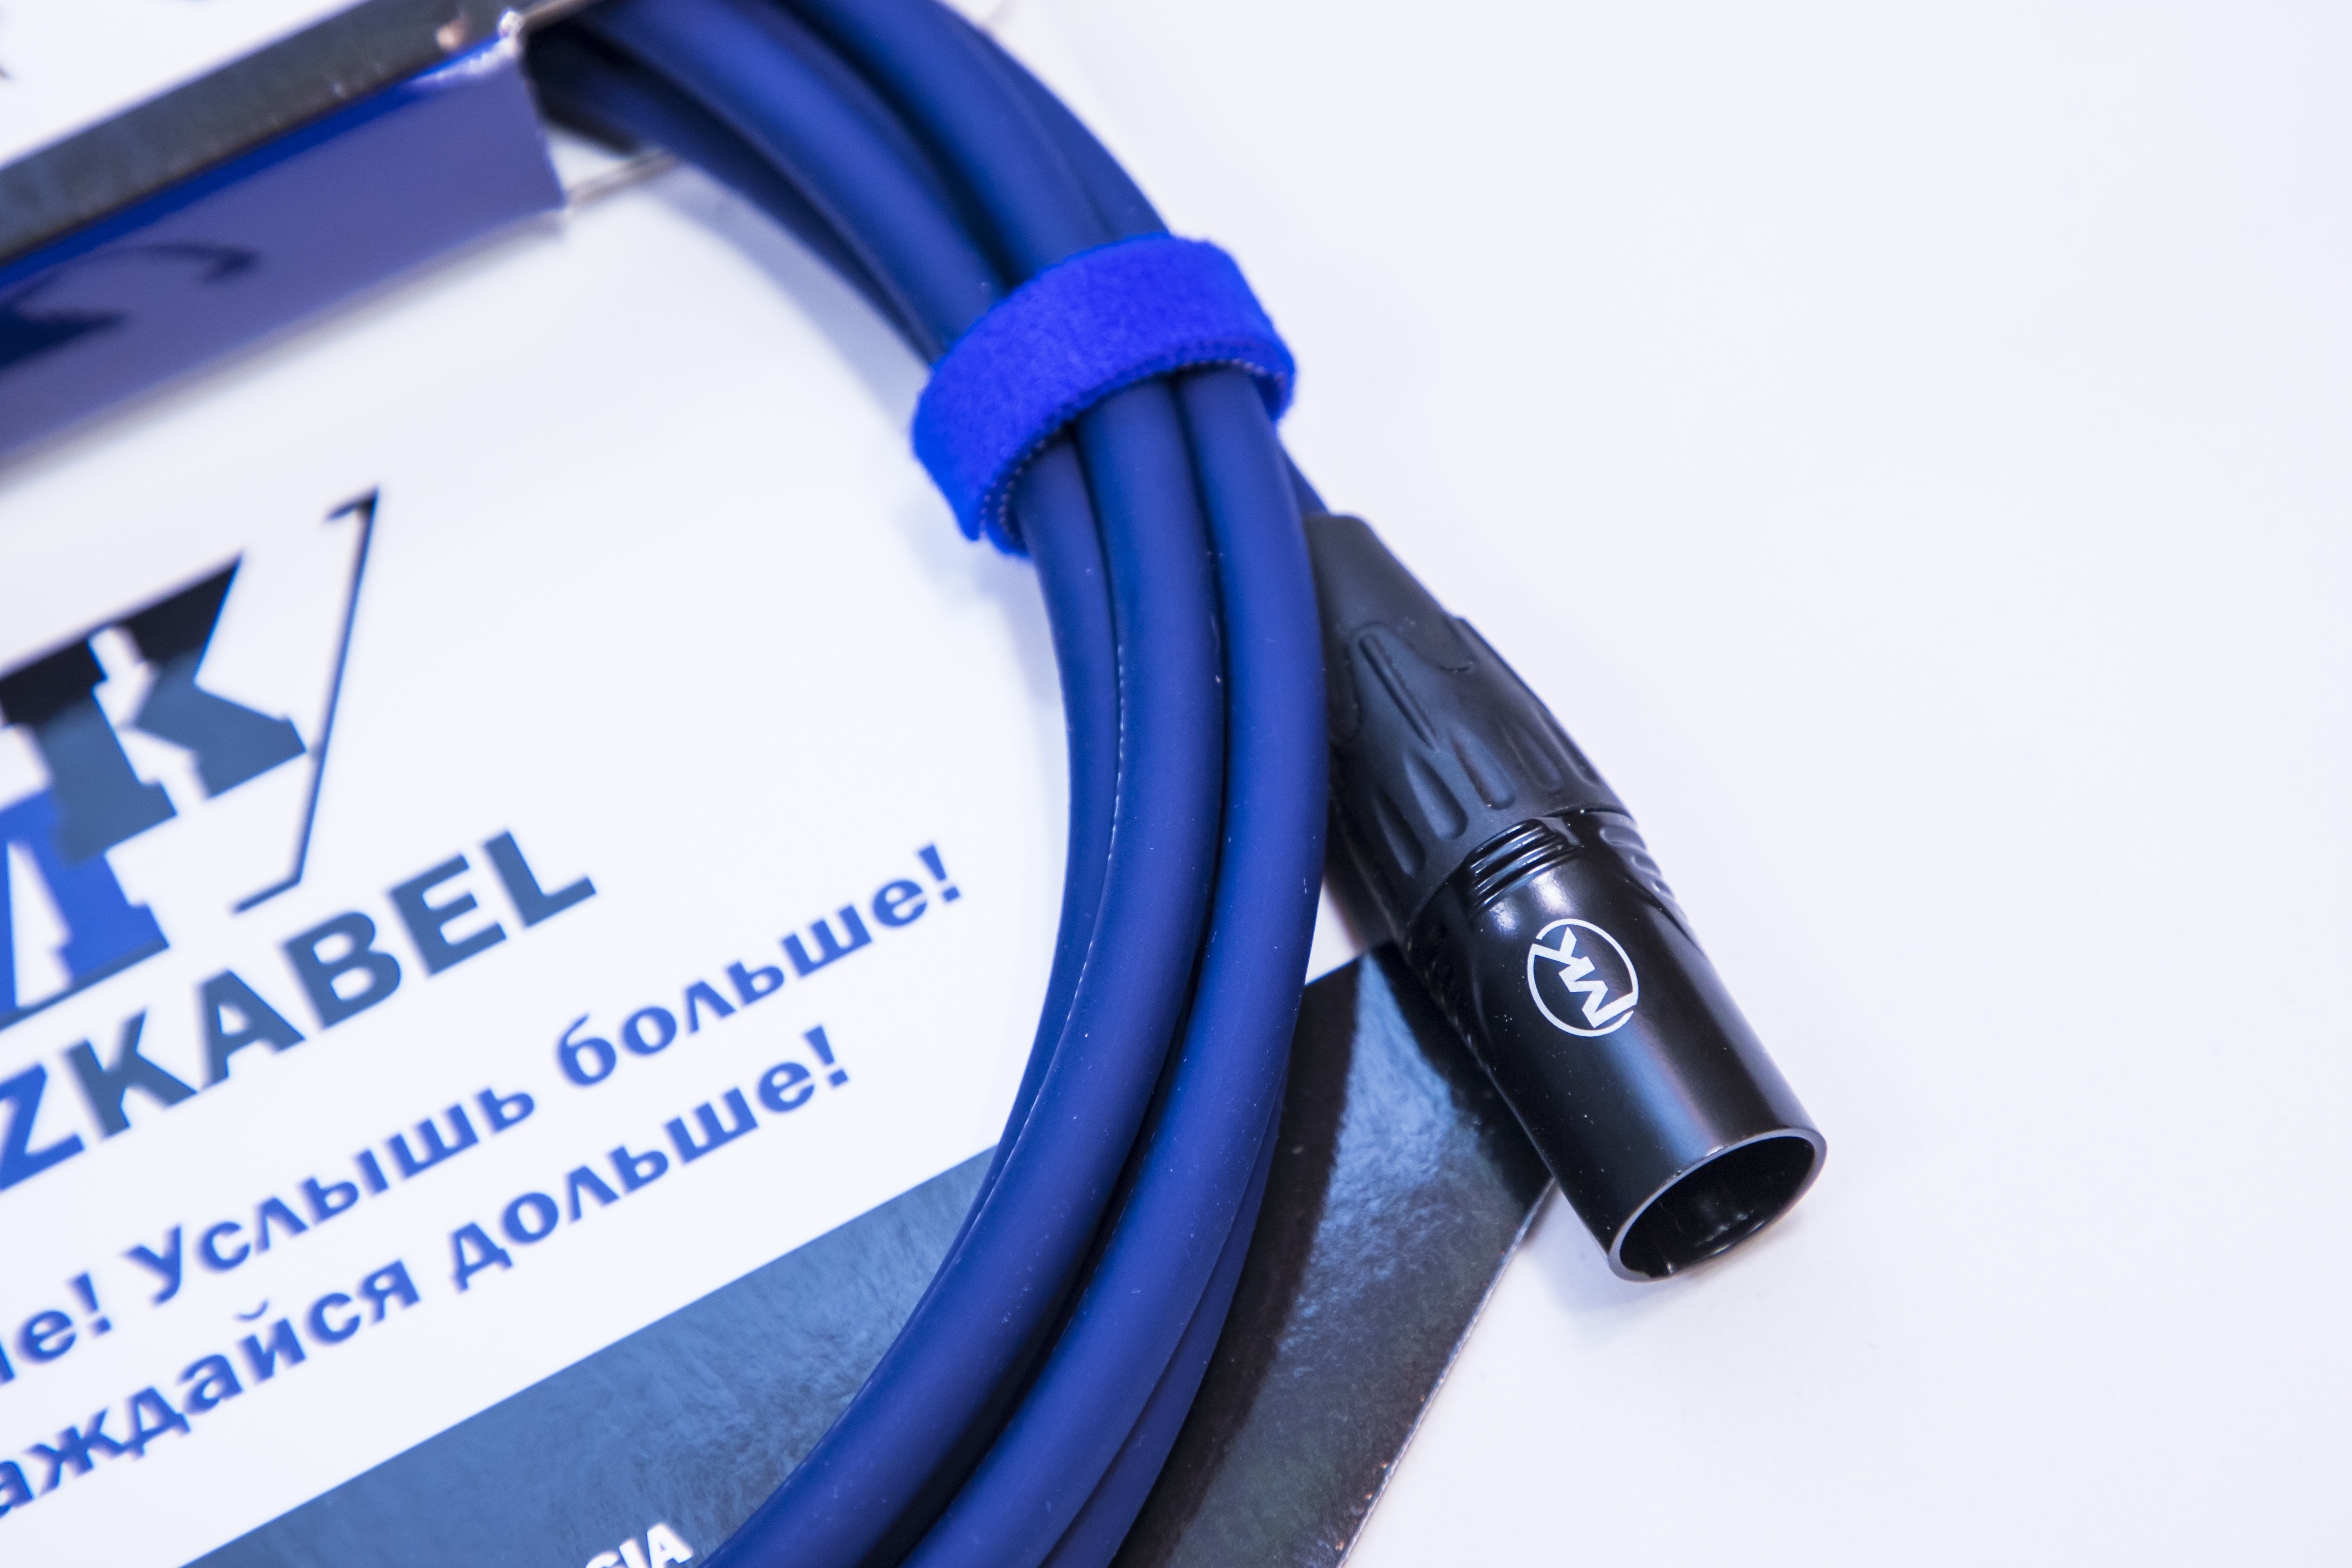 Микрофонный кабель MUZKABEL XXFMK1S - 6 метров, XLR – XLR